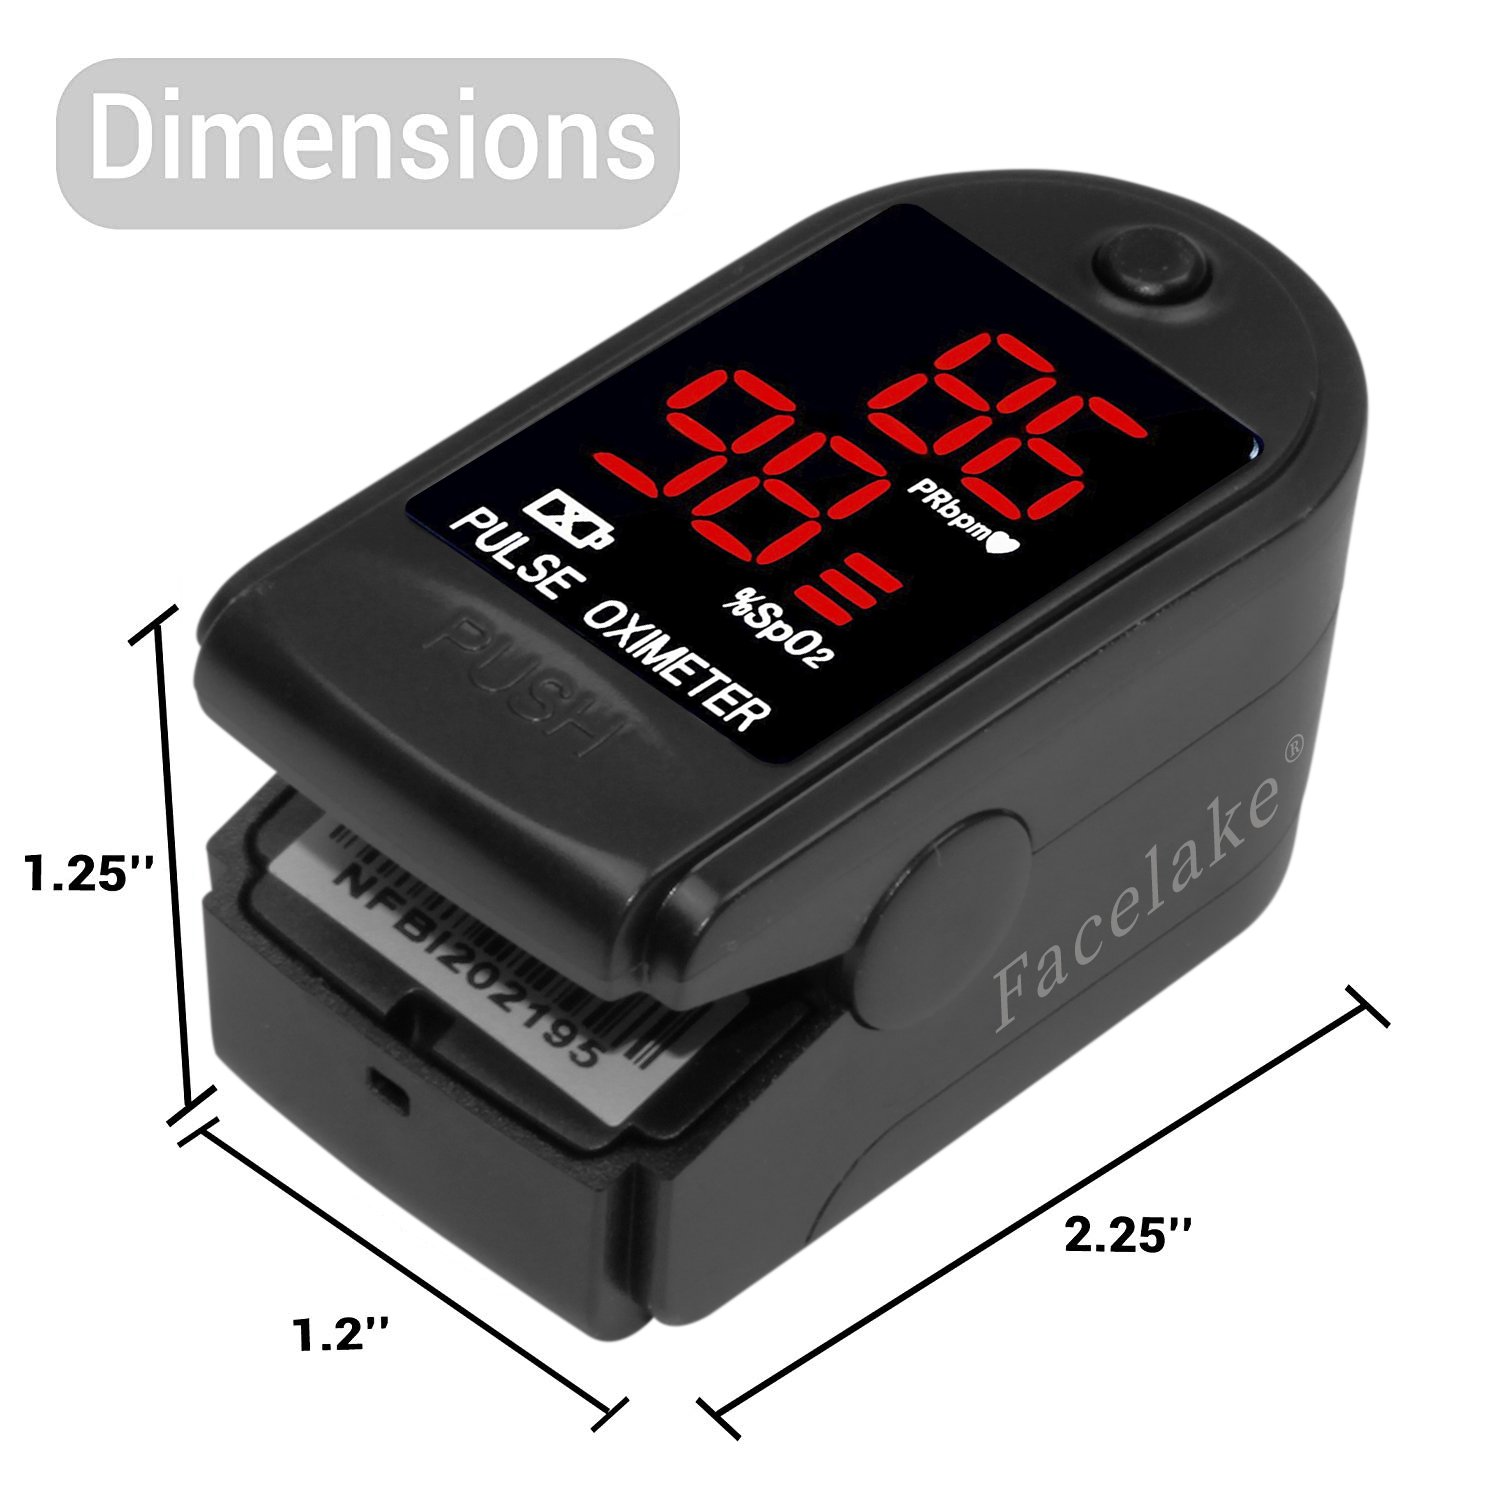 FaceLake FL-400 Fingertip Pulse Oximeter (Black) - image 3 of 5